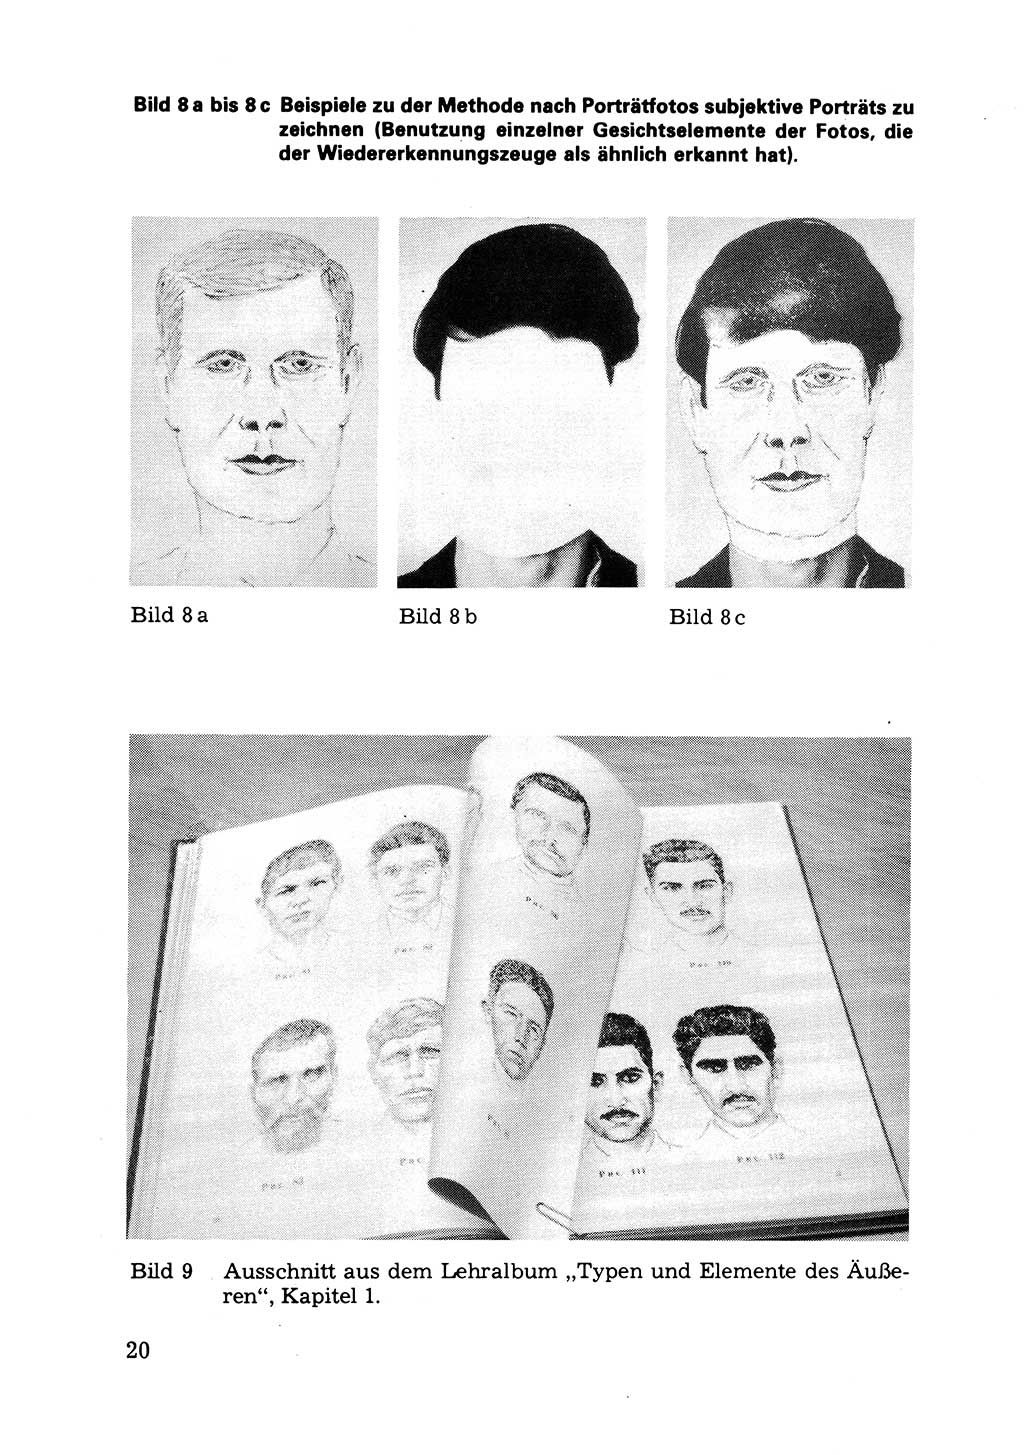 Das subjektive Porträt [Deutsche Demokratische Republik (DDR)] 1981, Seite 20 (Subj. Port. DDR 1981, S. 20)